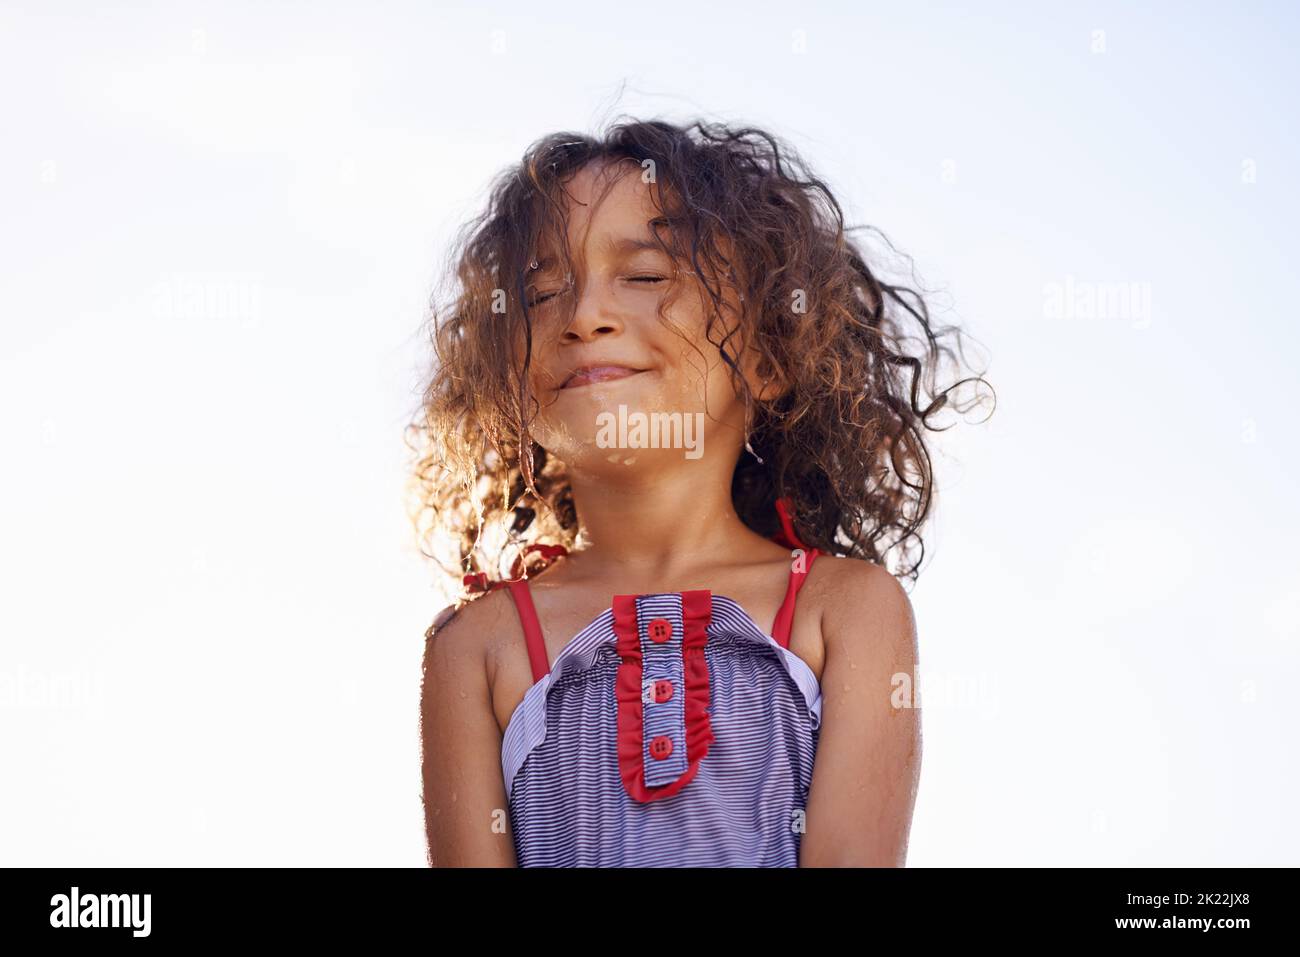 Genießen Sie die Sonne. Ein kleines Mädchen in einem Kostüm mit Wasser spritzte auf ihr Gesicht. Stockfoto